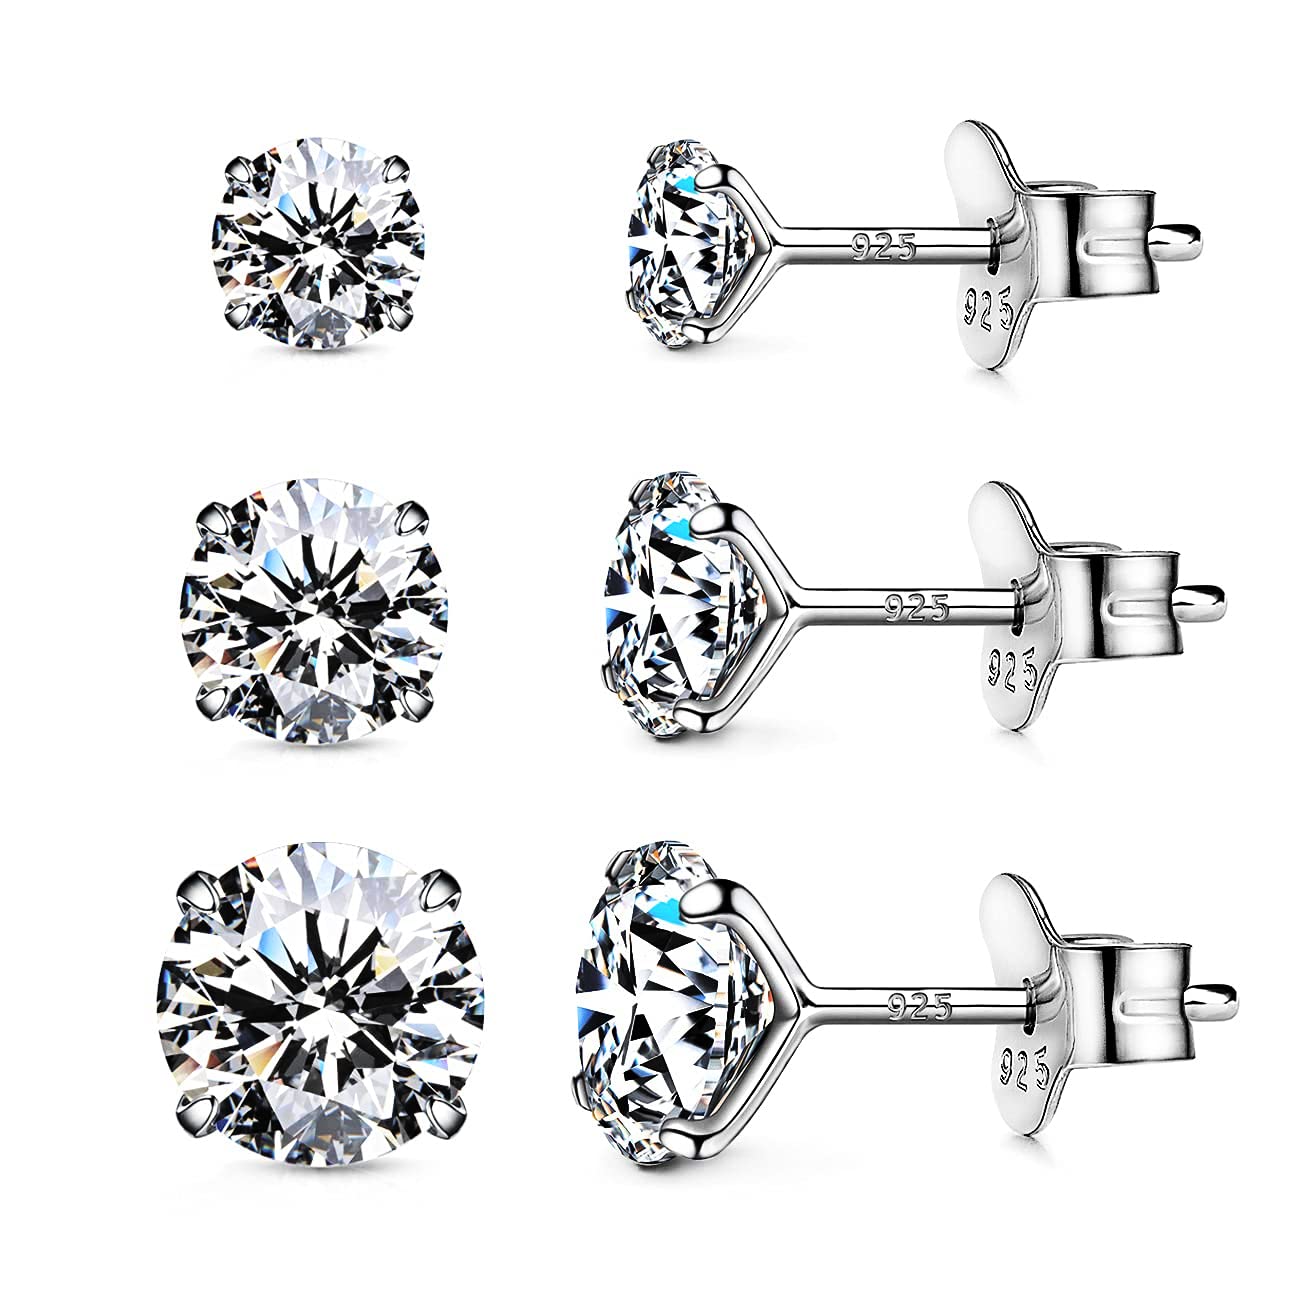 925 Sterling Silver Earrings, Cubic Zirconia Earrings Studs, Diamond Stud Earrings for Women Girl